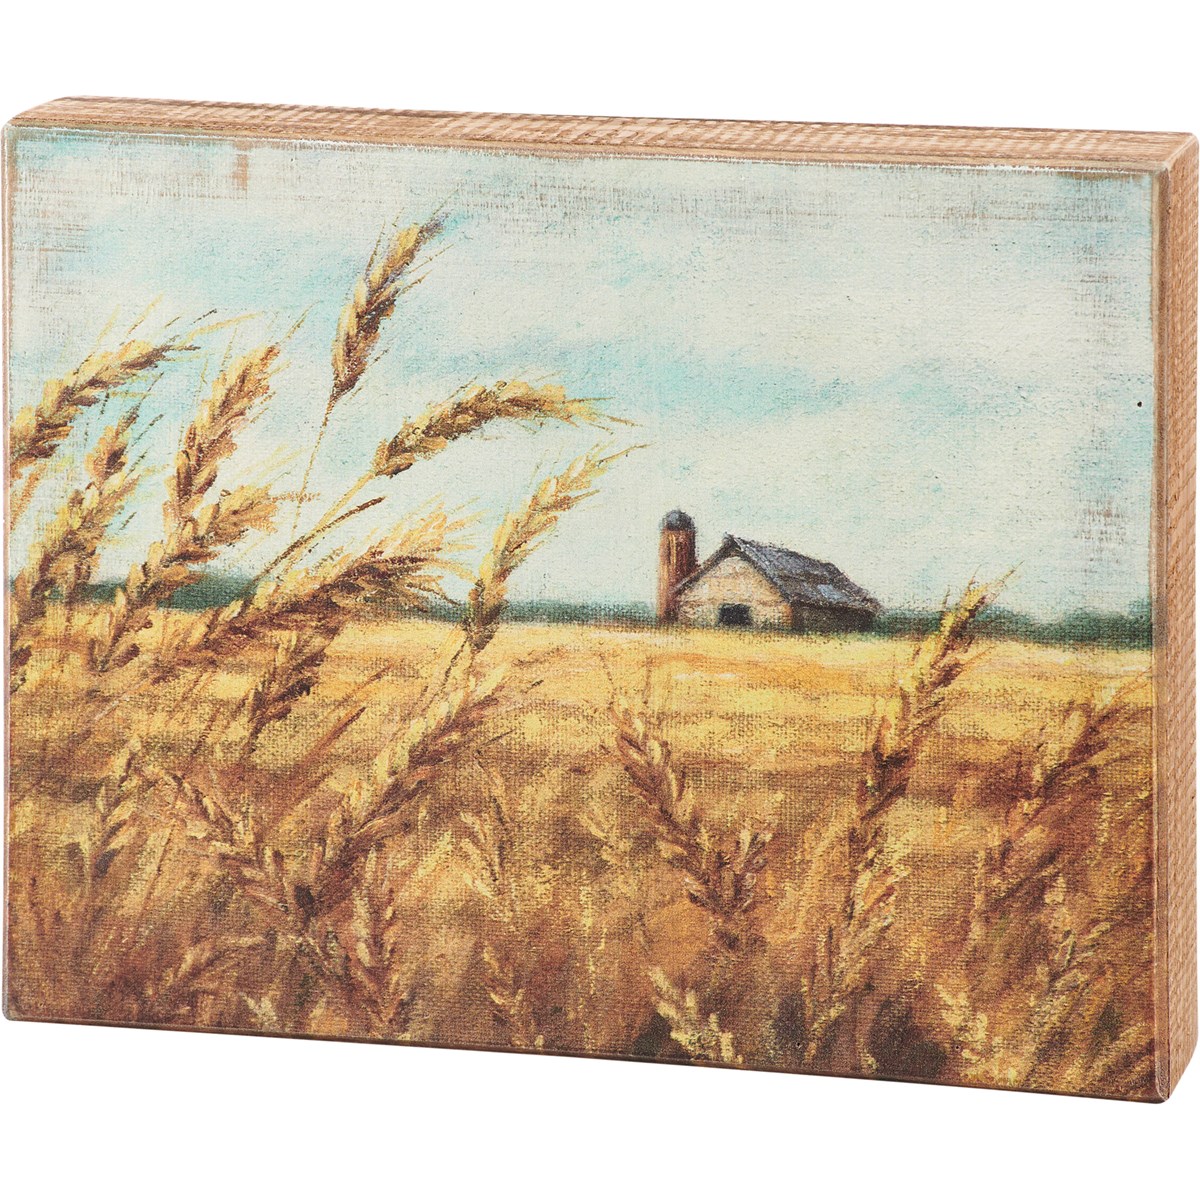 Box Sign - Wheat Field - 10" x 8" x 1.75" - Wood